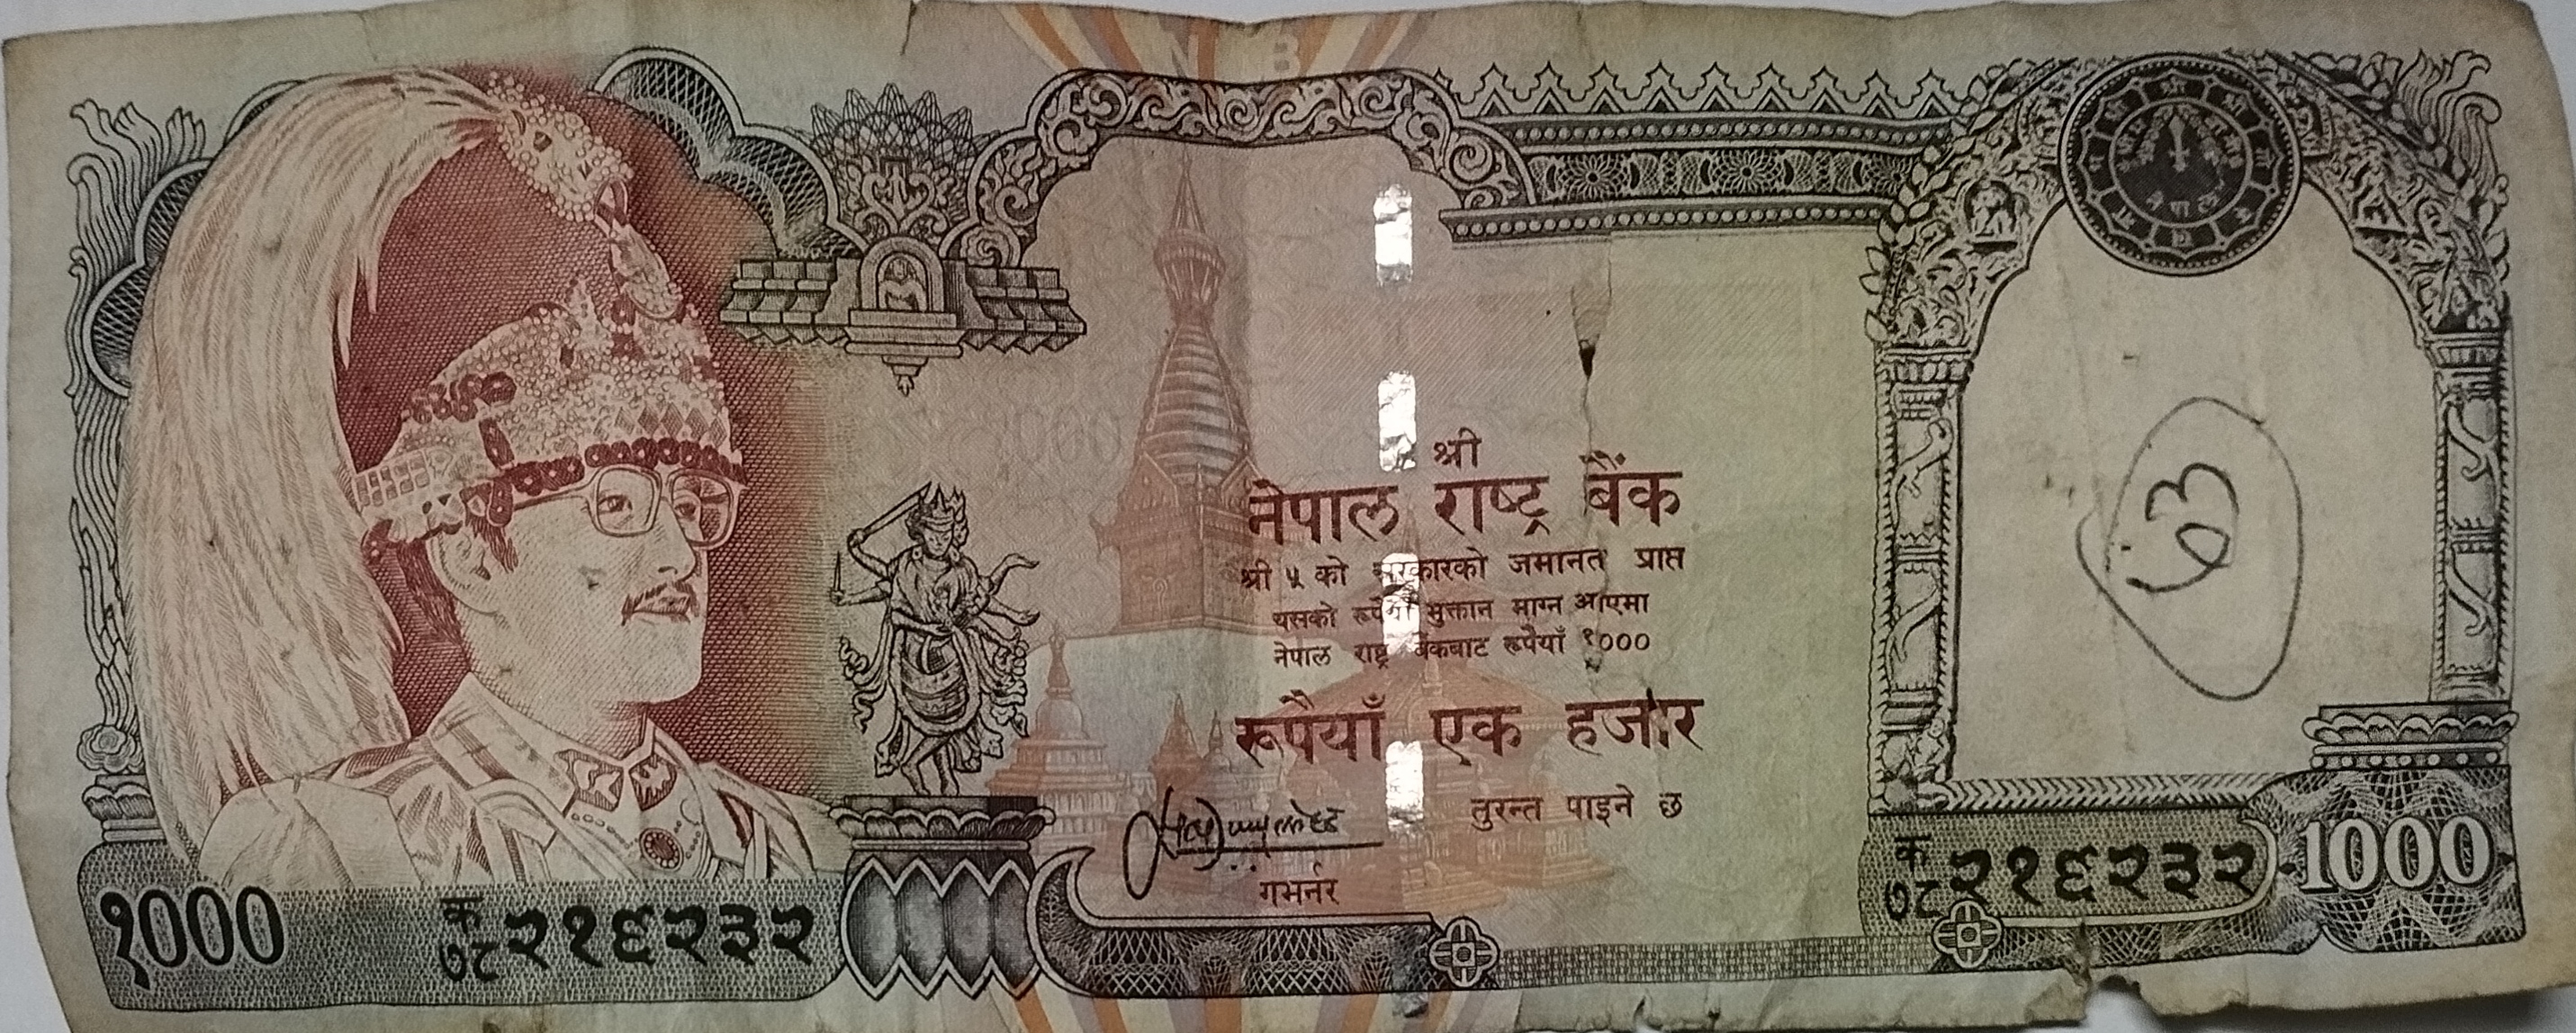 नेपाल राष्ट्र बैंकले तोकेको विदेशी मुद्राको विनिमय दर